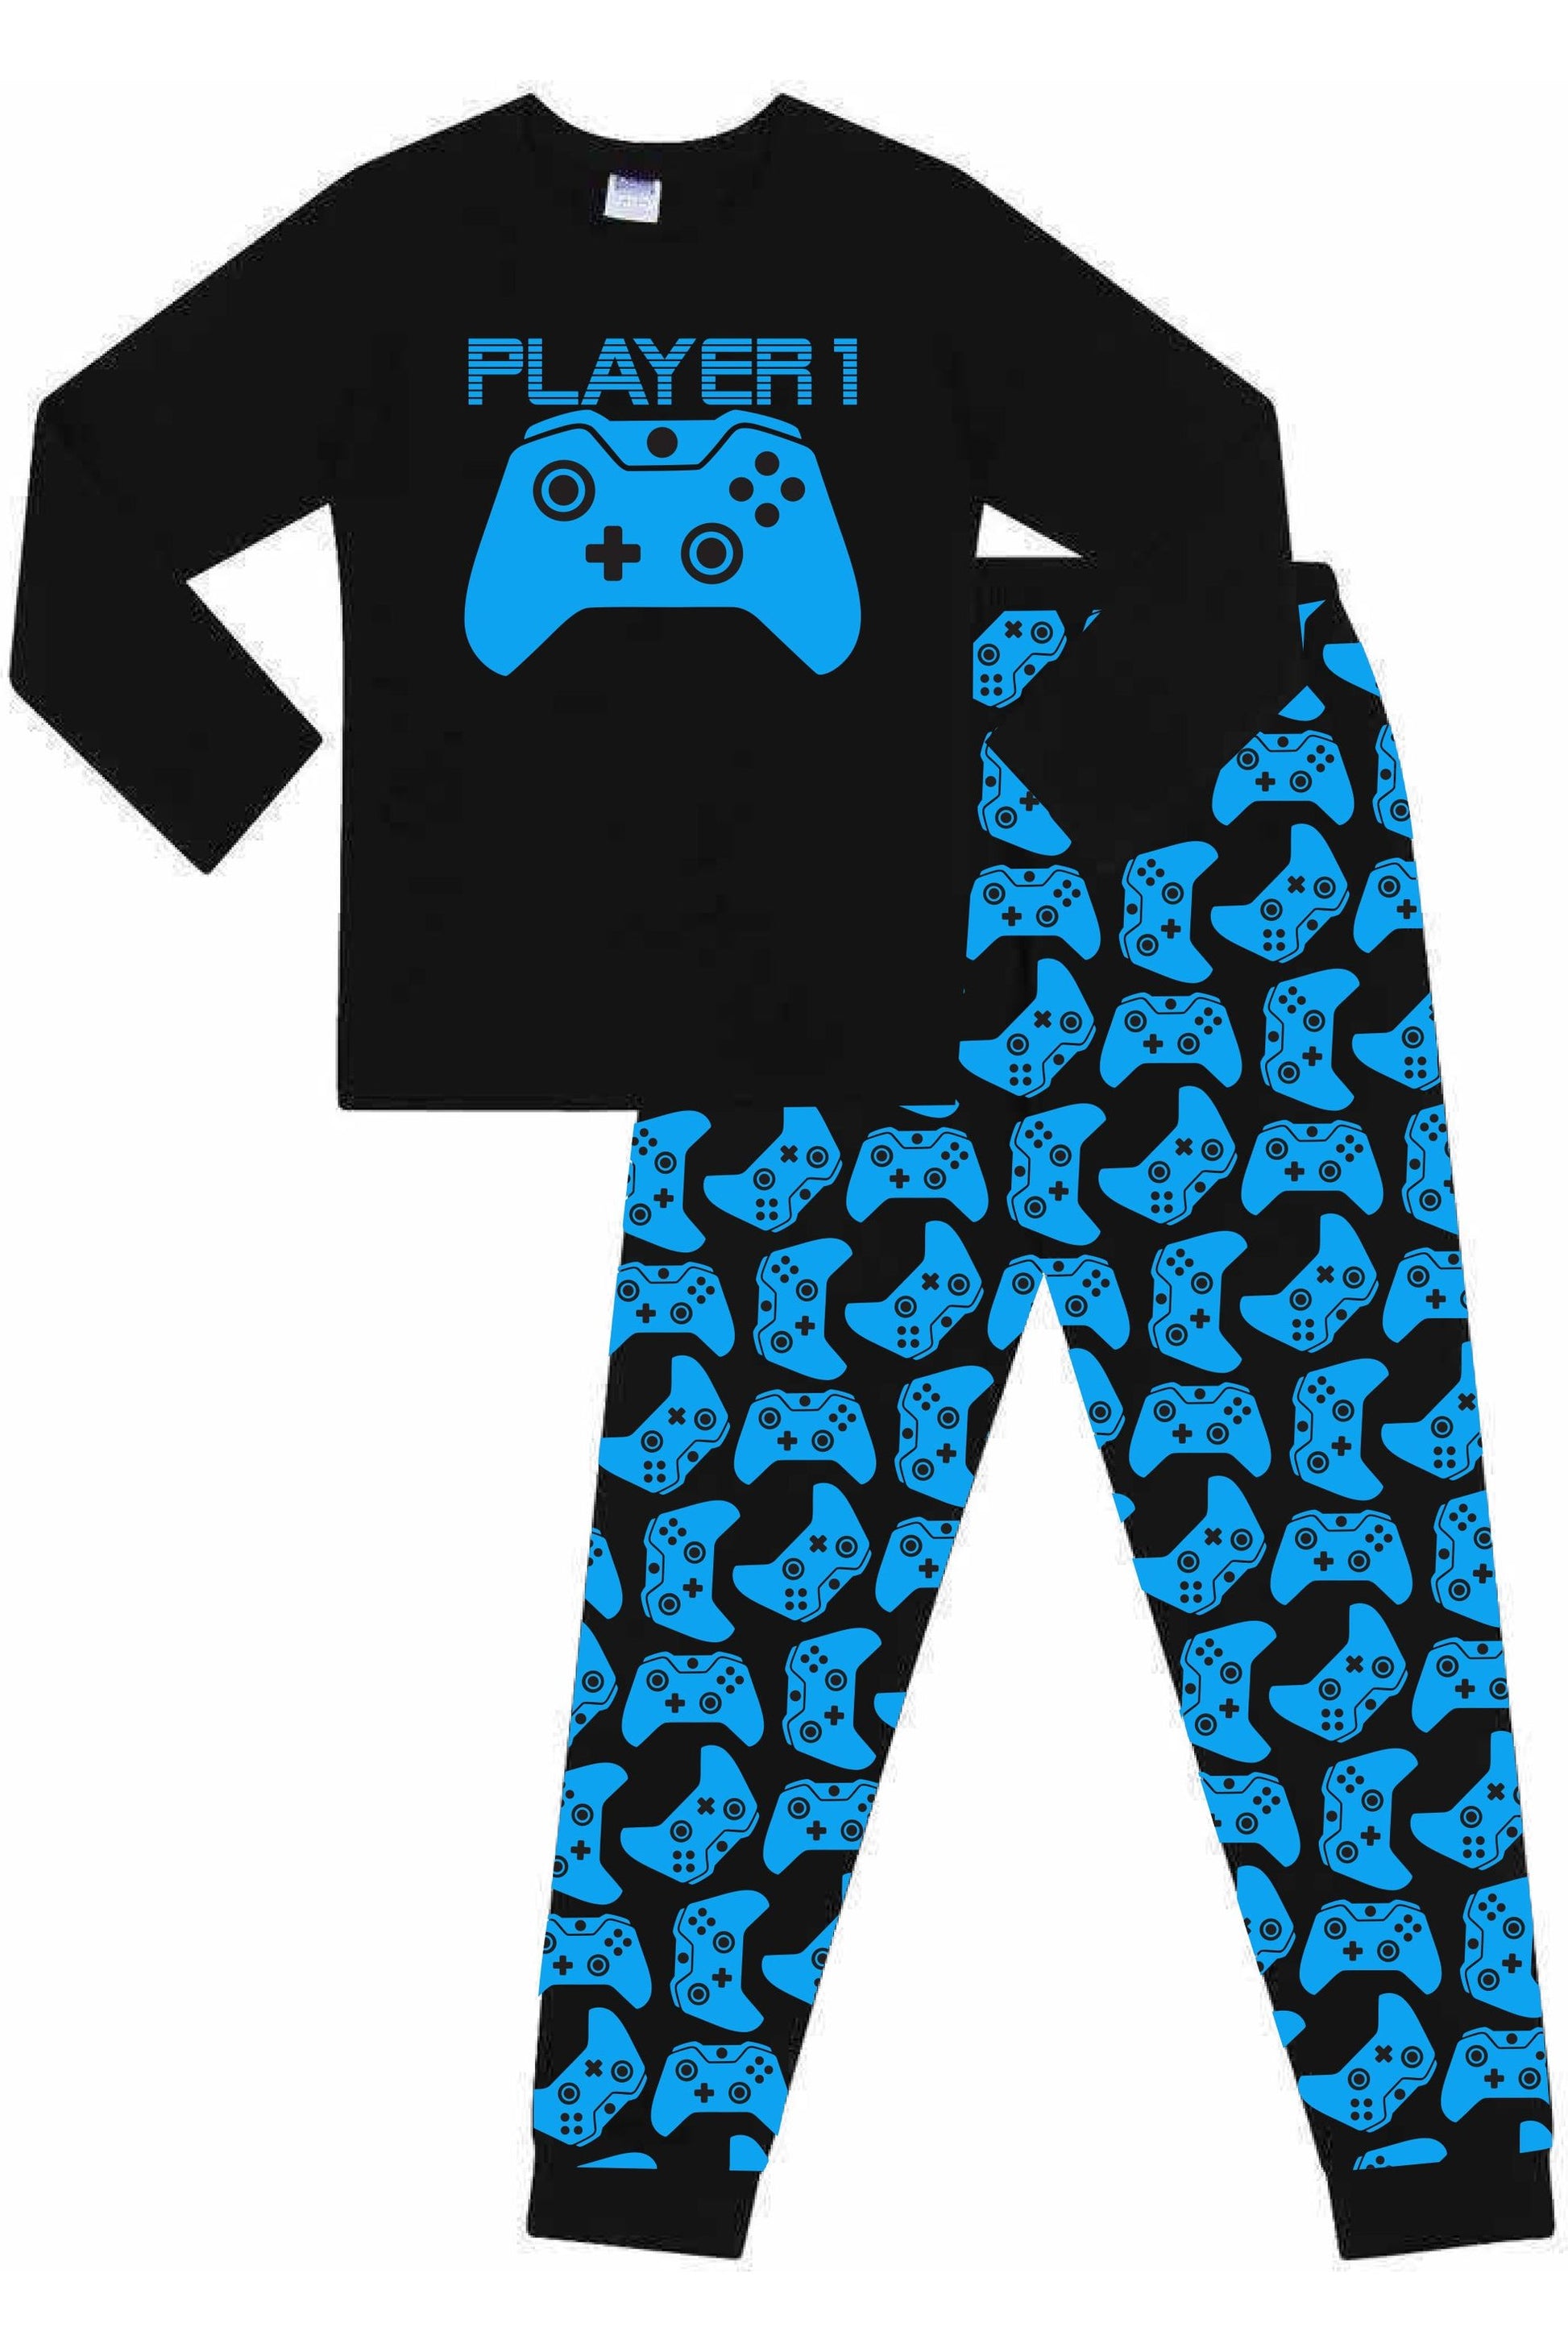 Player 1 Gaming Controller Blue Long Pyjamas - Pyjamas.com